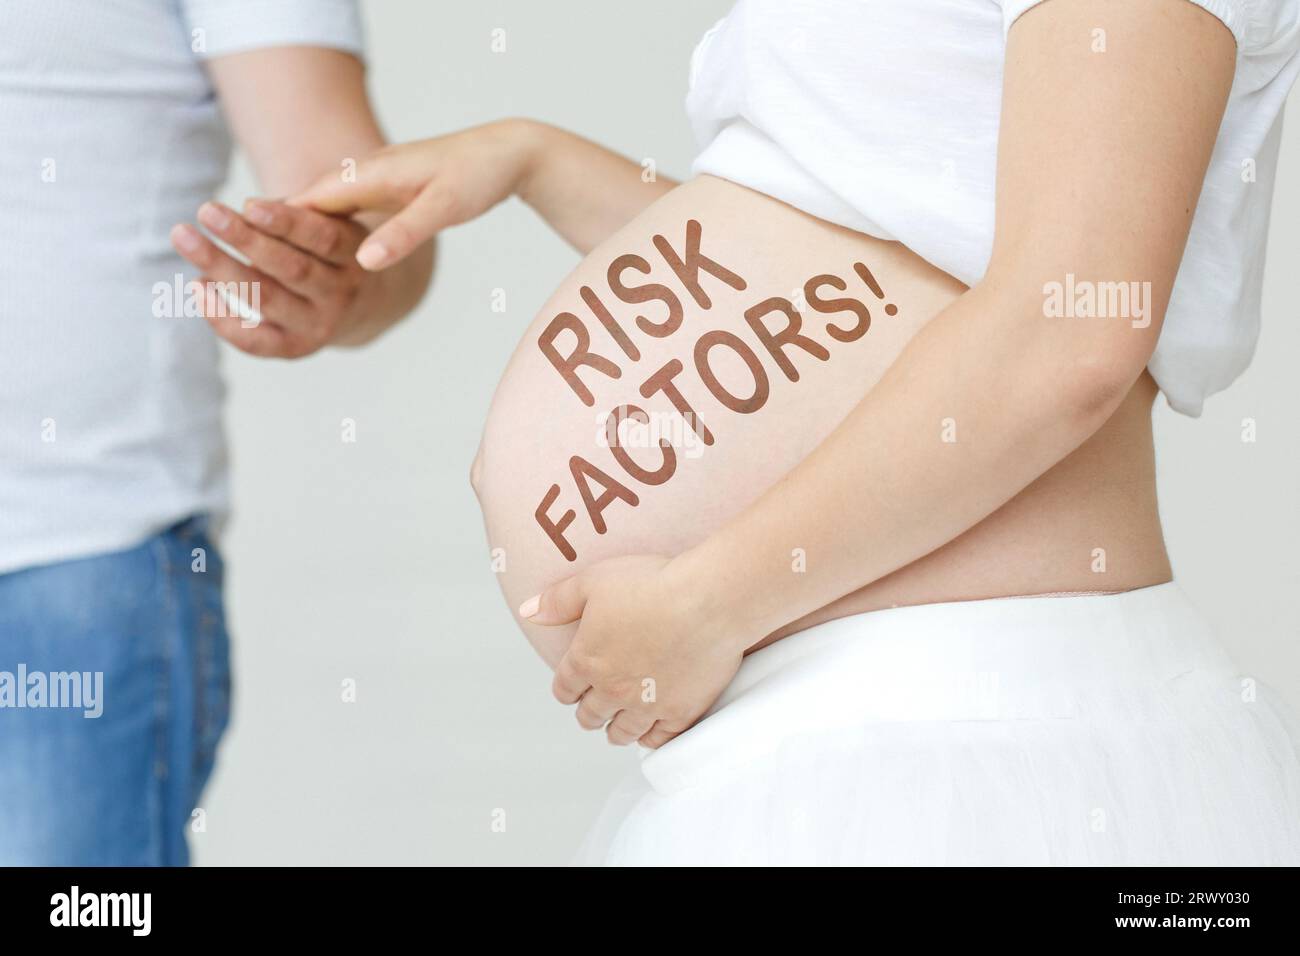 Eine schwangere Frau hält die Hand ihres Mannes auf dem Bauch mit der Inschrift - Risikofaktoren, ein Ausrufezeichen. Schwangerschaftskonzept. Stockfoto